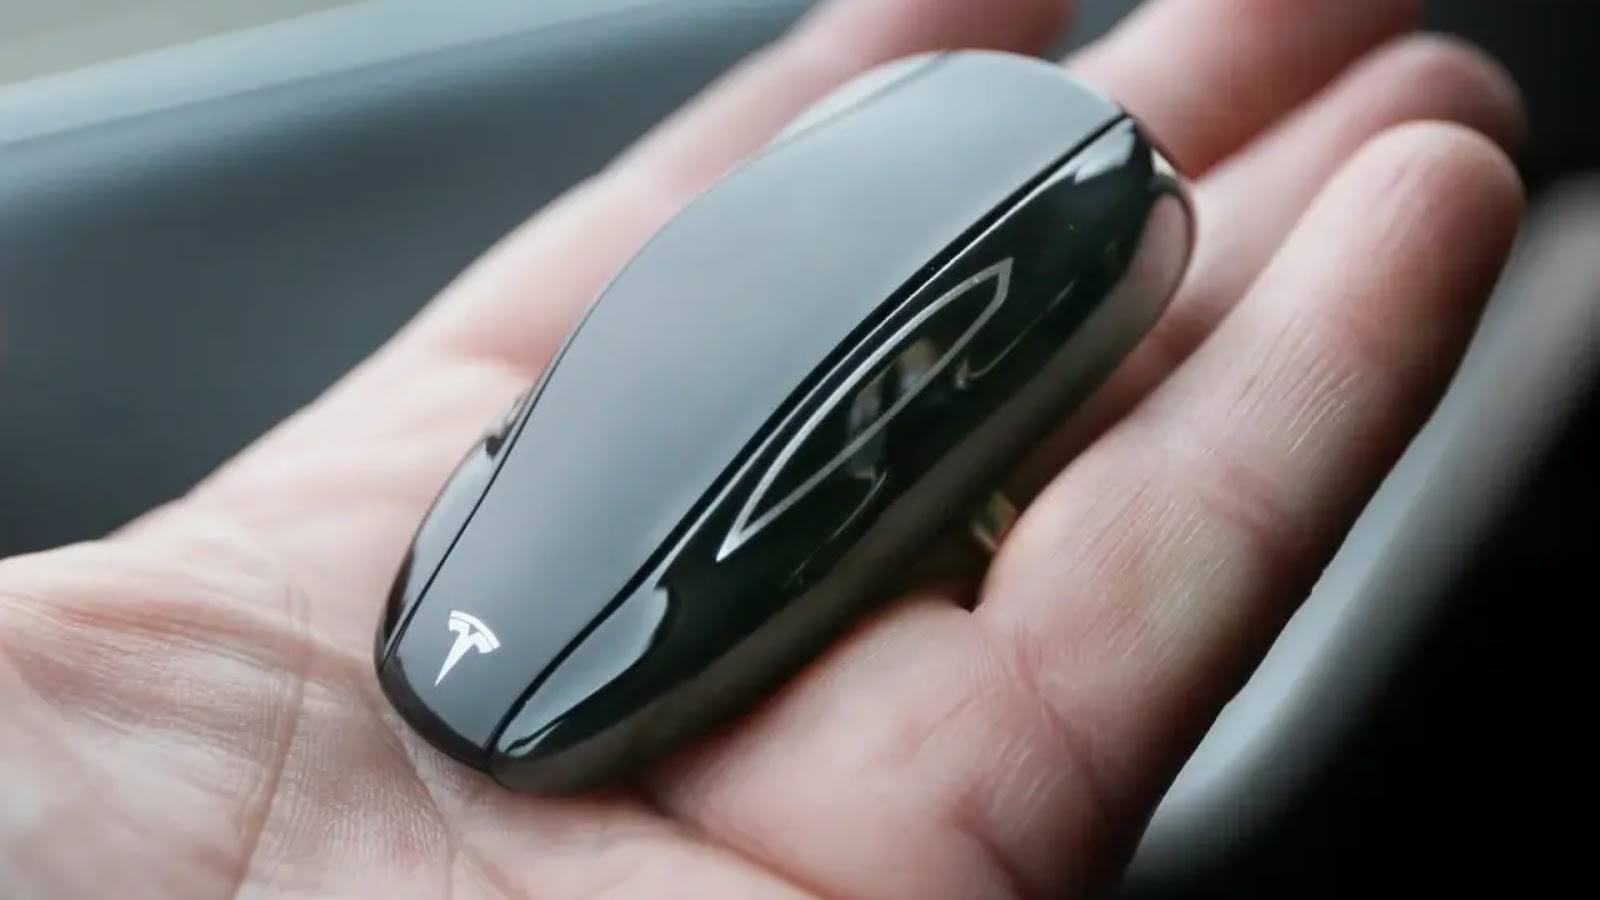 A Tesla car key replacement
